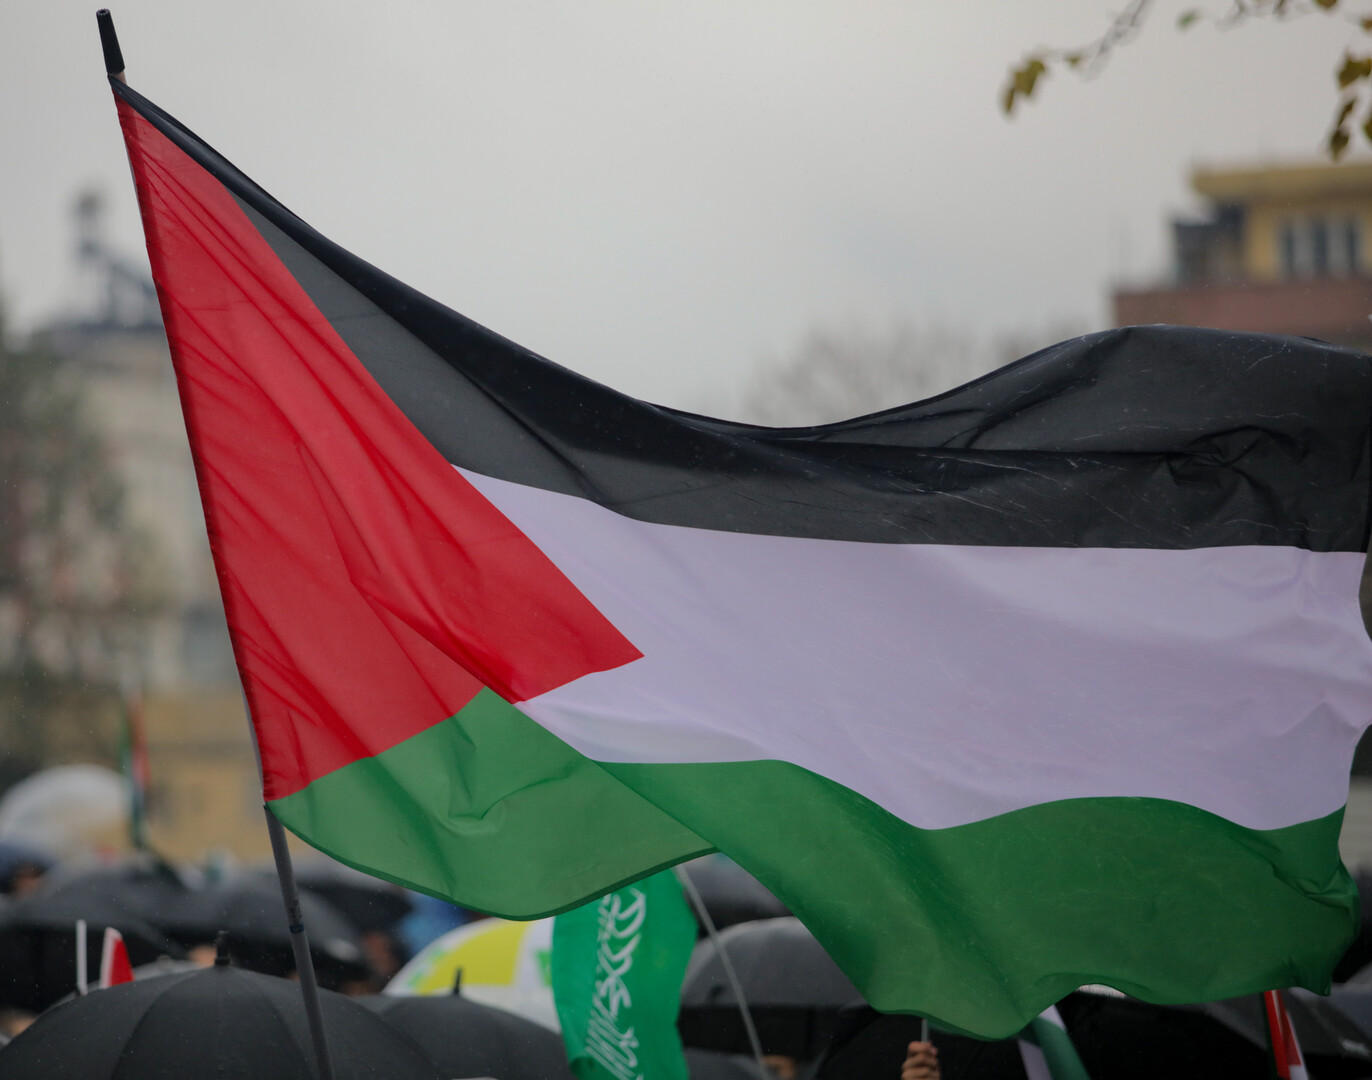 الرئاسة الفلسطينية ترحب باعتراف النرويج وإسبانيا وإيرلندا بدولة فلسطين